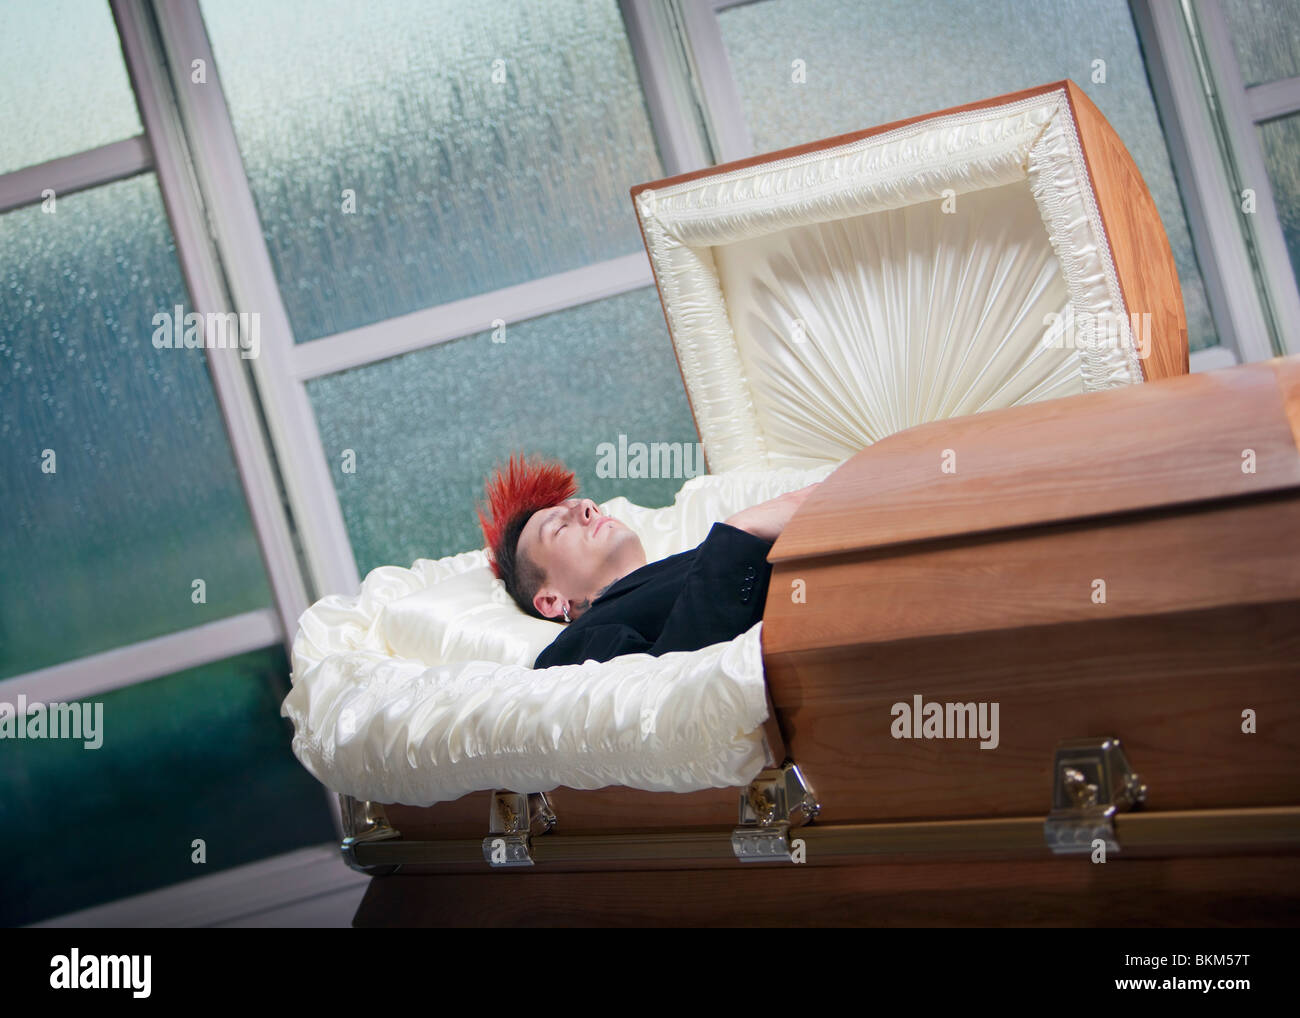 Einen verstorbenen jungen Mann In einem Sarg Stockfoto